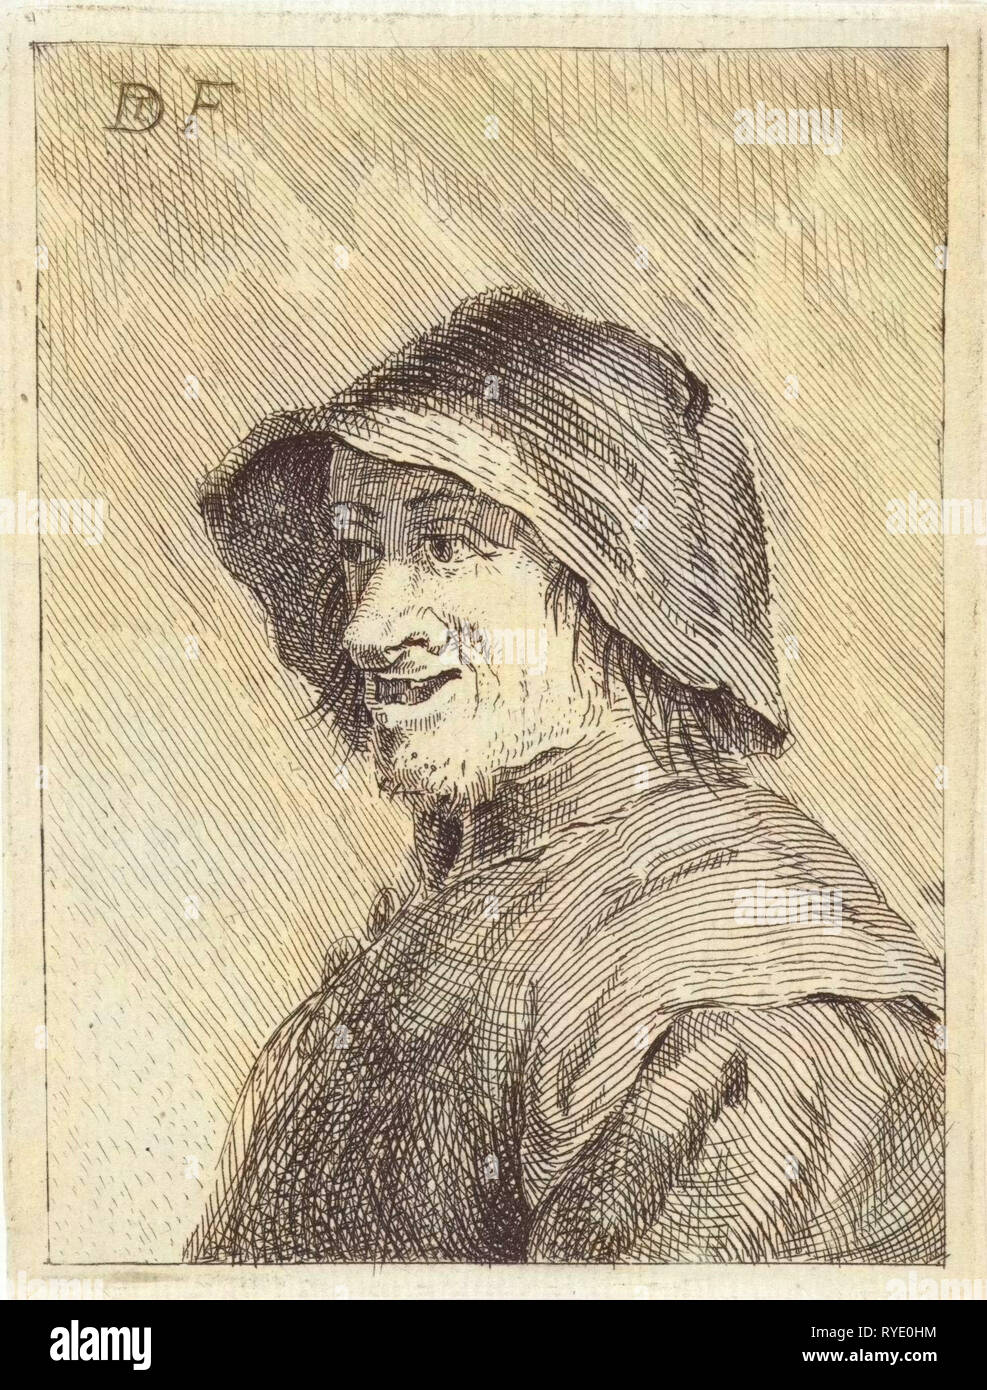 Contadino con hat sulla testa a sinistra, anonimo, 1626 - 1740 Foto Stock